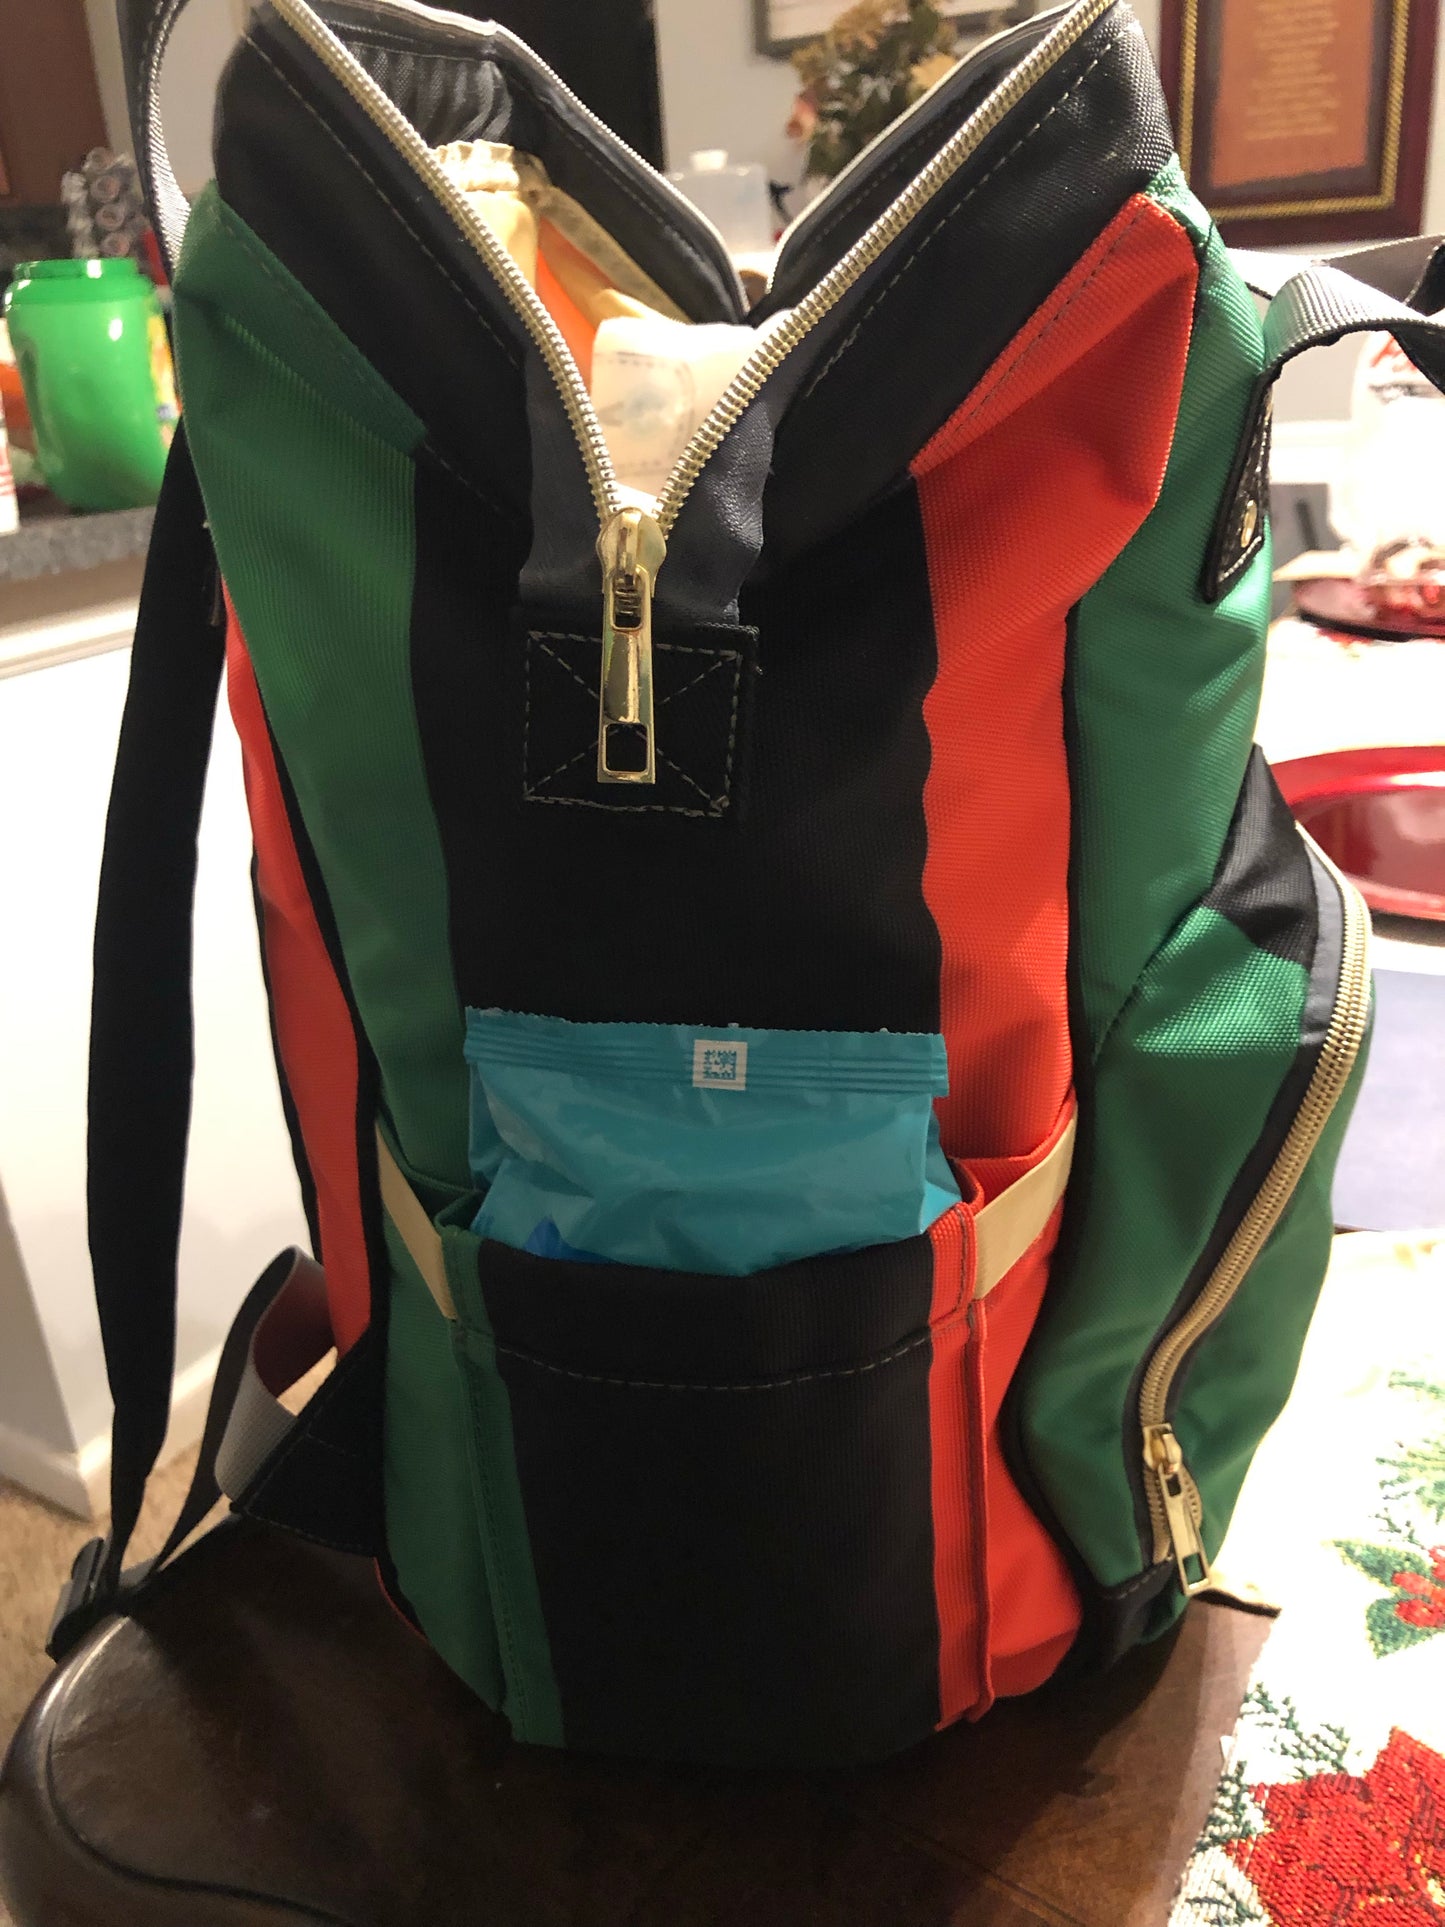 Pan African RBG Flag Waterproof Diaper Backpack